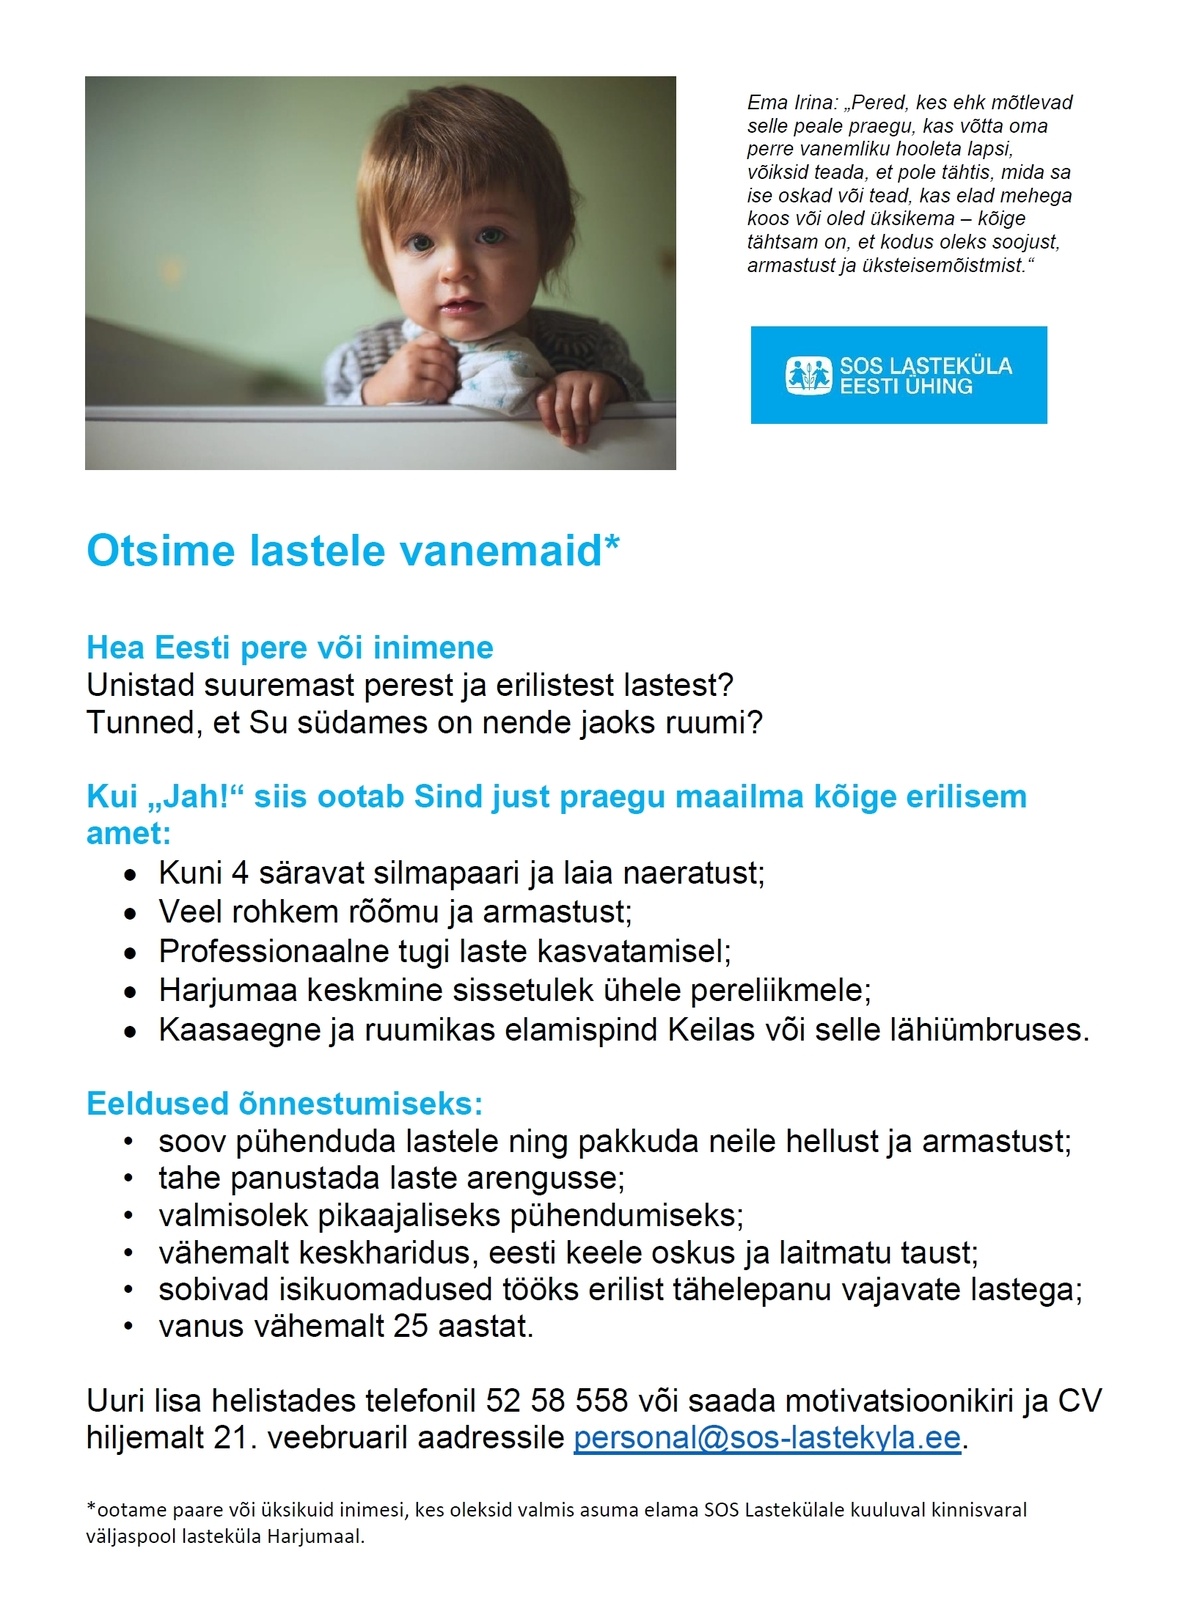 SOS Lasteküla Eesti Ühing Otsime lastele vanemaid*